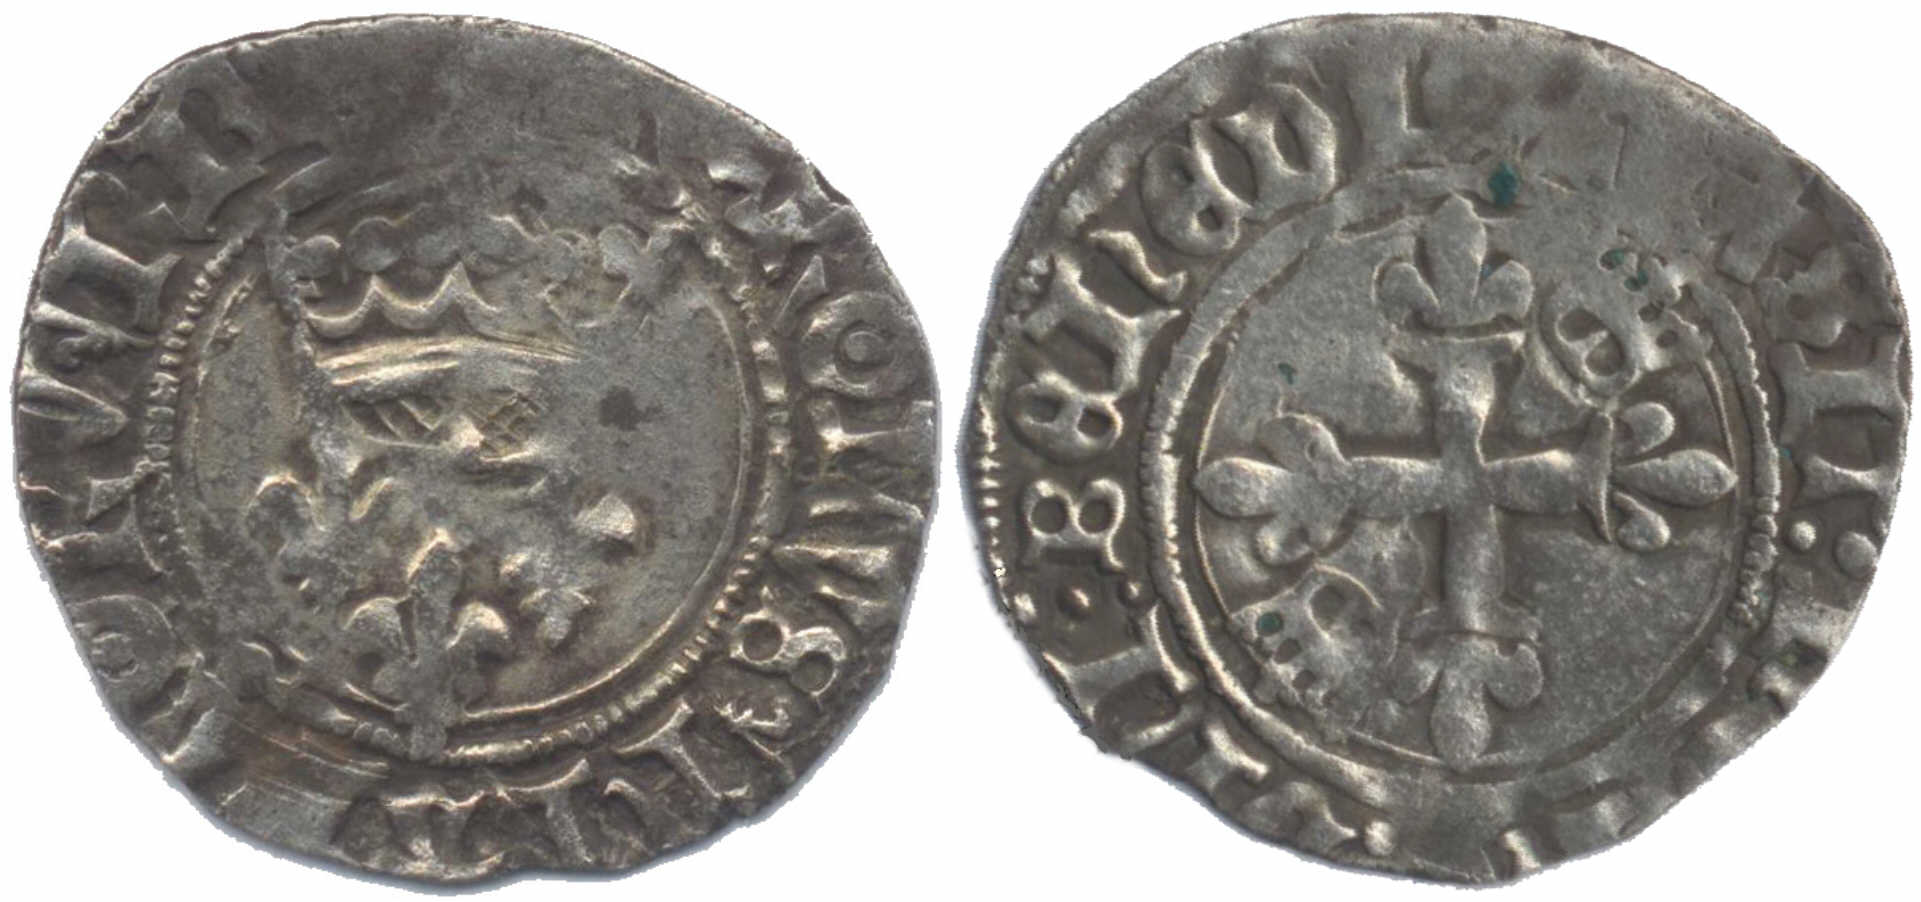 Approche typologique et chronologique des émissions de gros dits «florettes» au nom de Charles VI produites à Mâcon entre 1417 et 1421 – partie 10